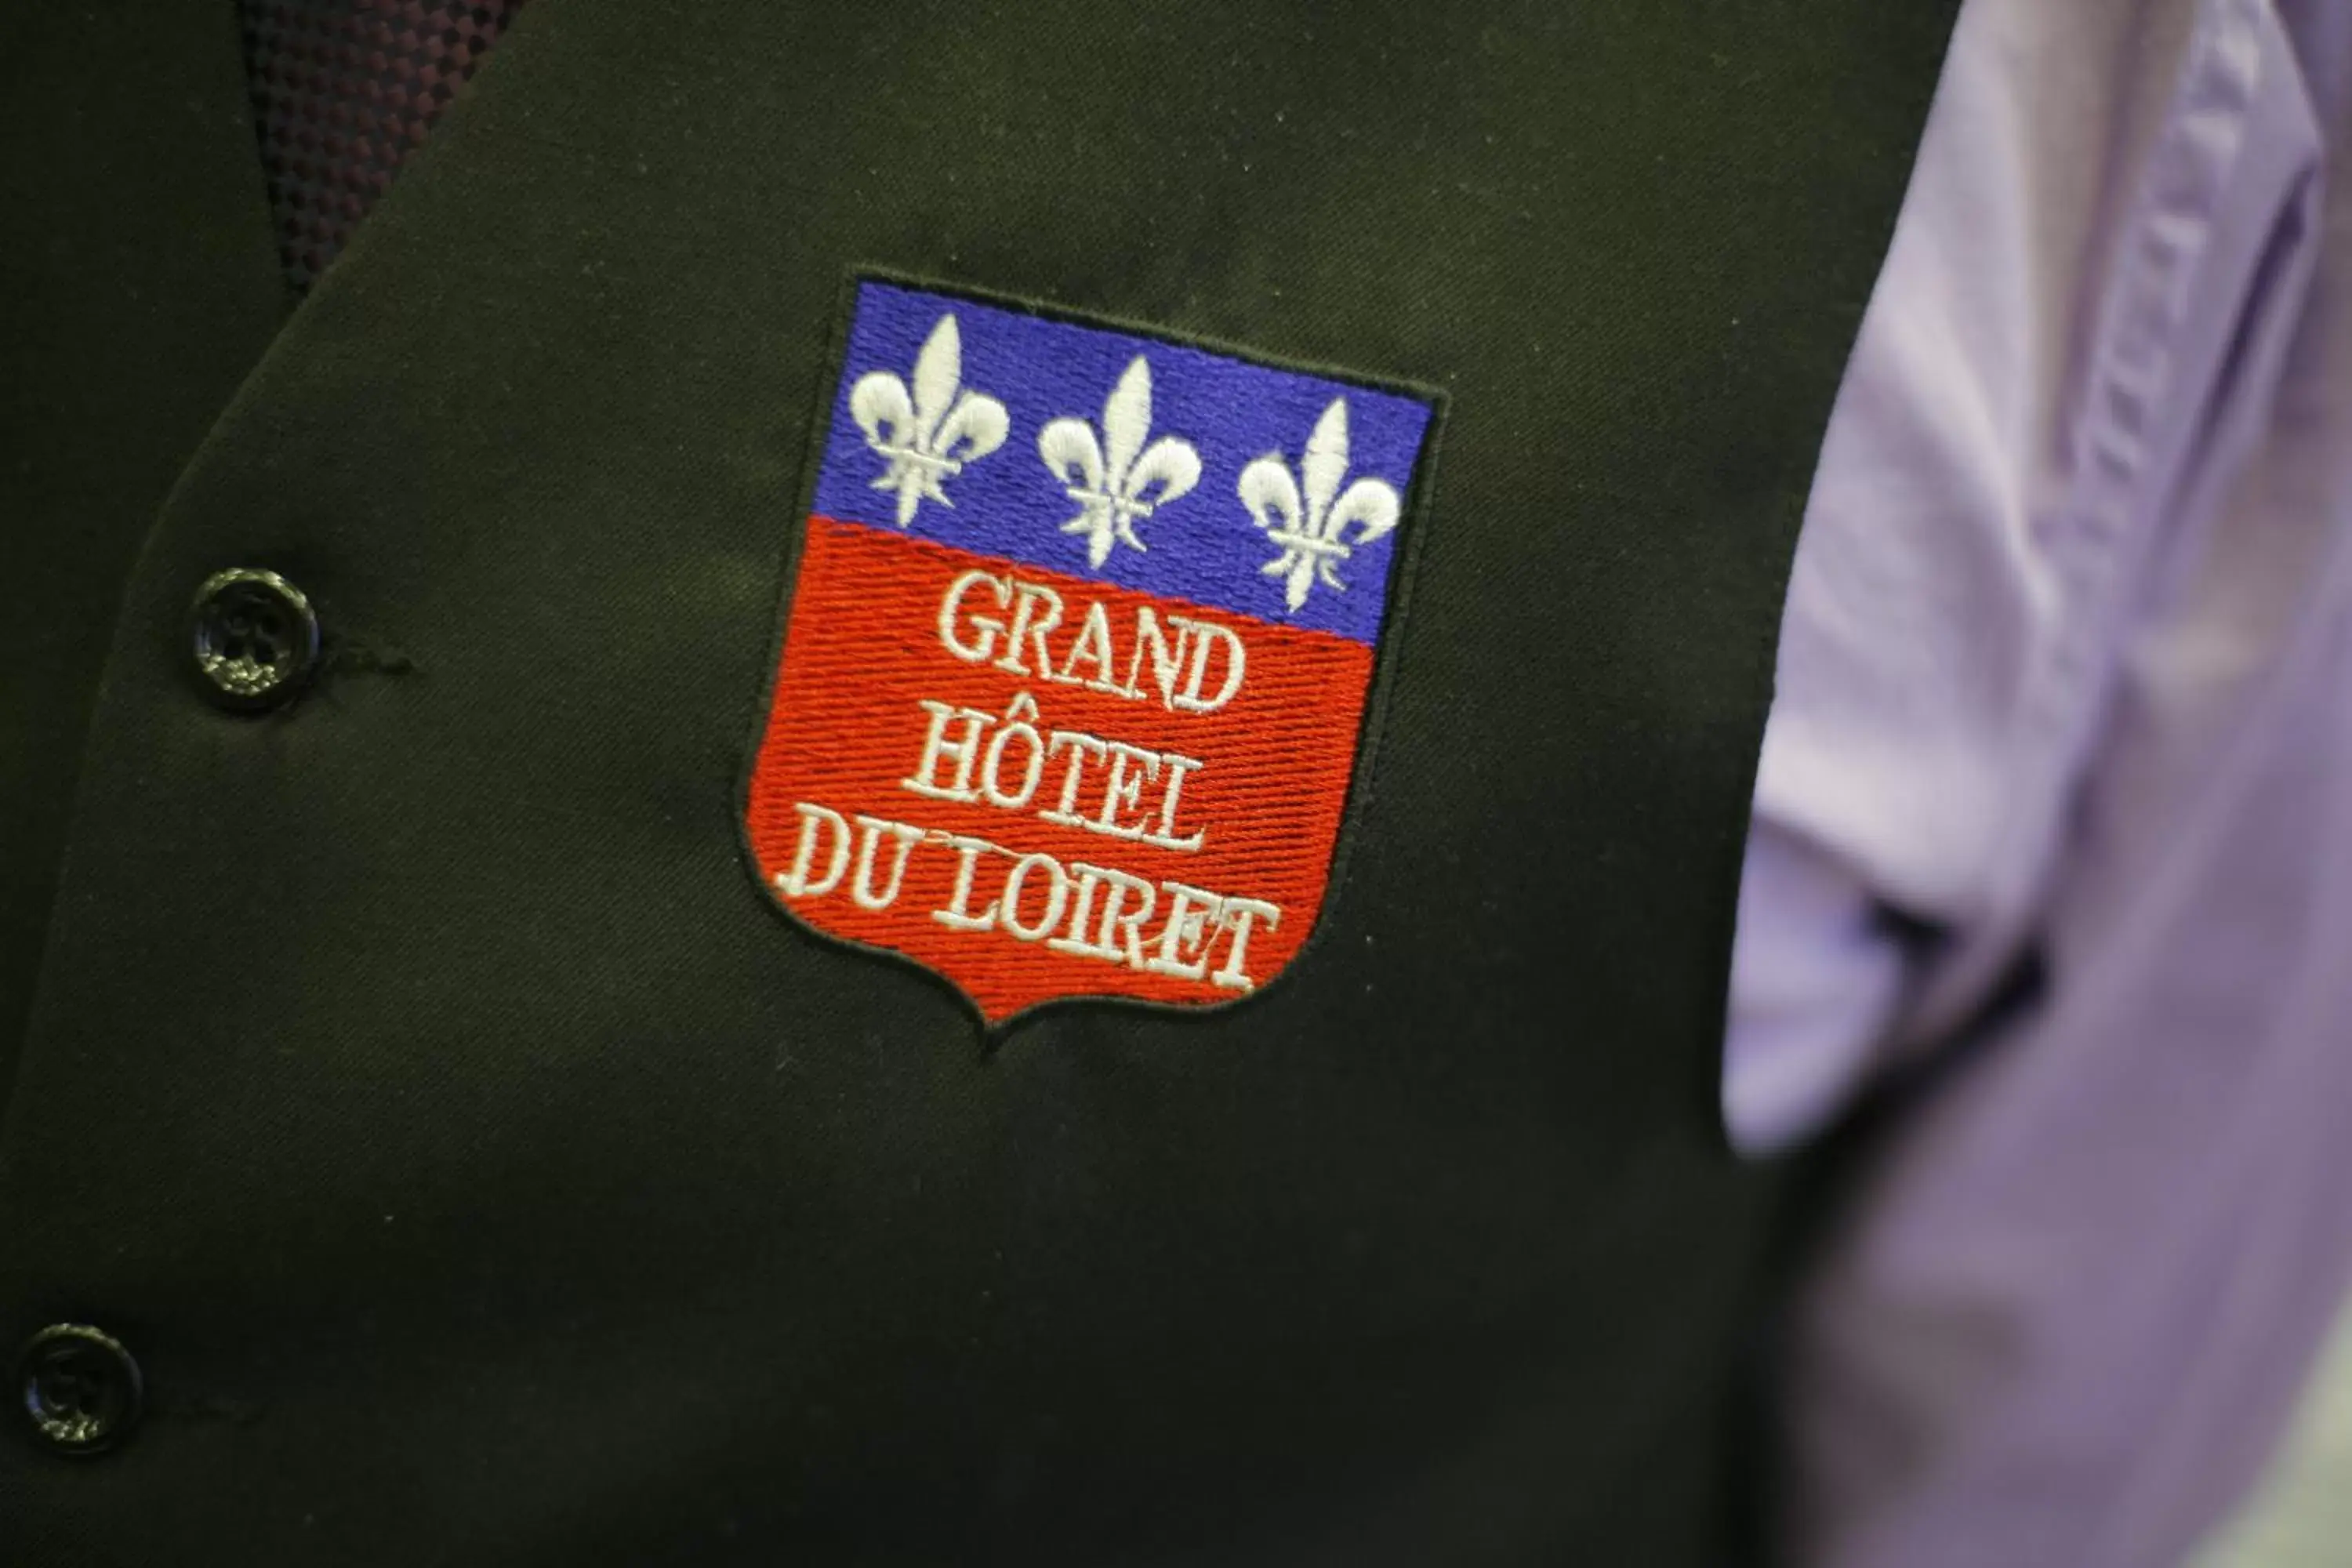 People in Grand Hotel du Loiret